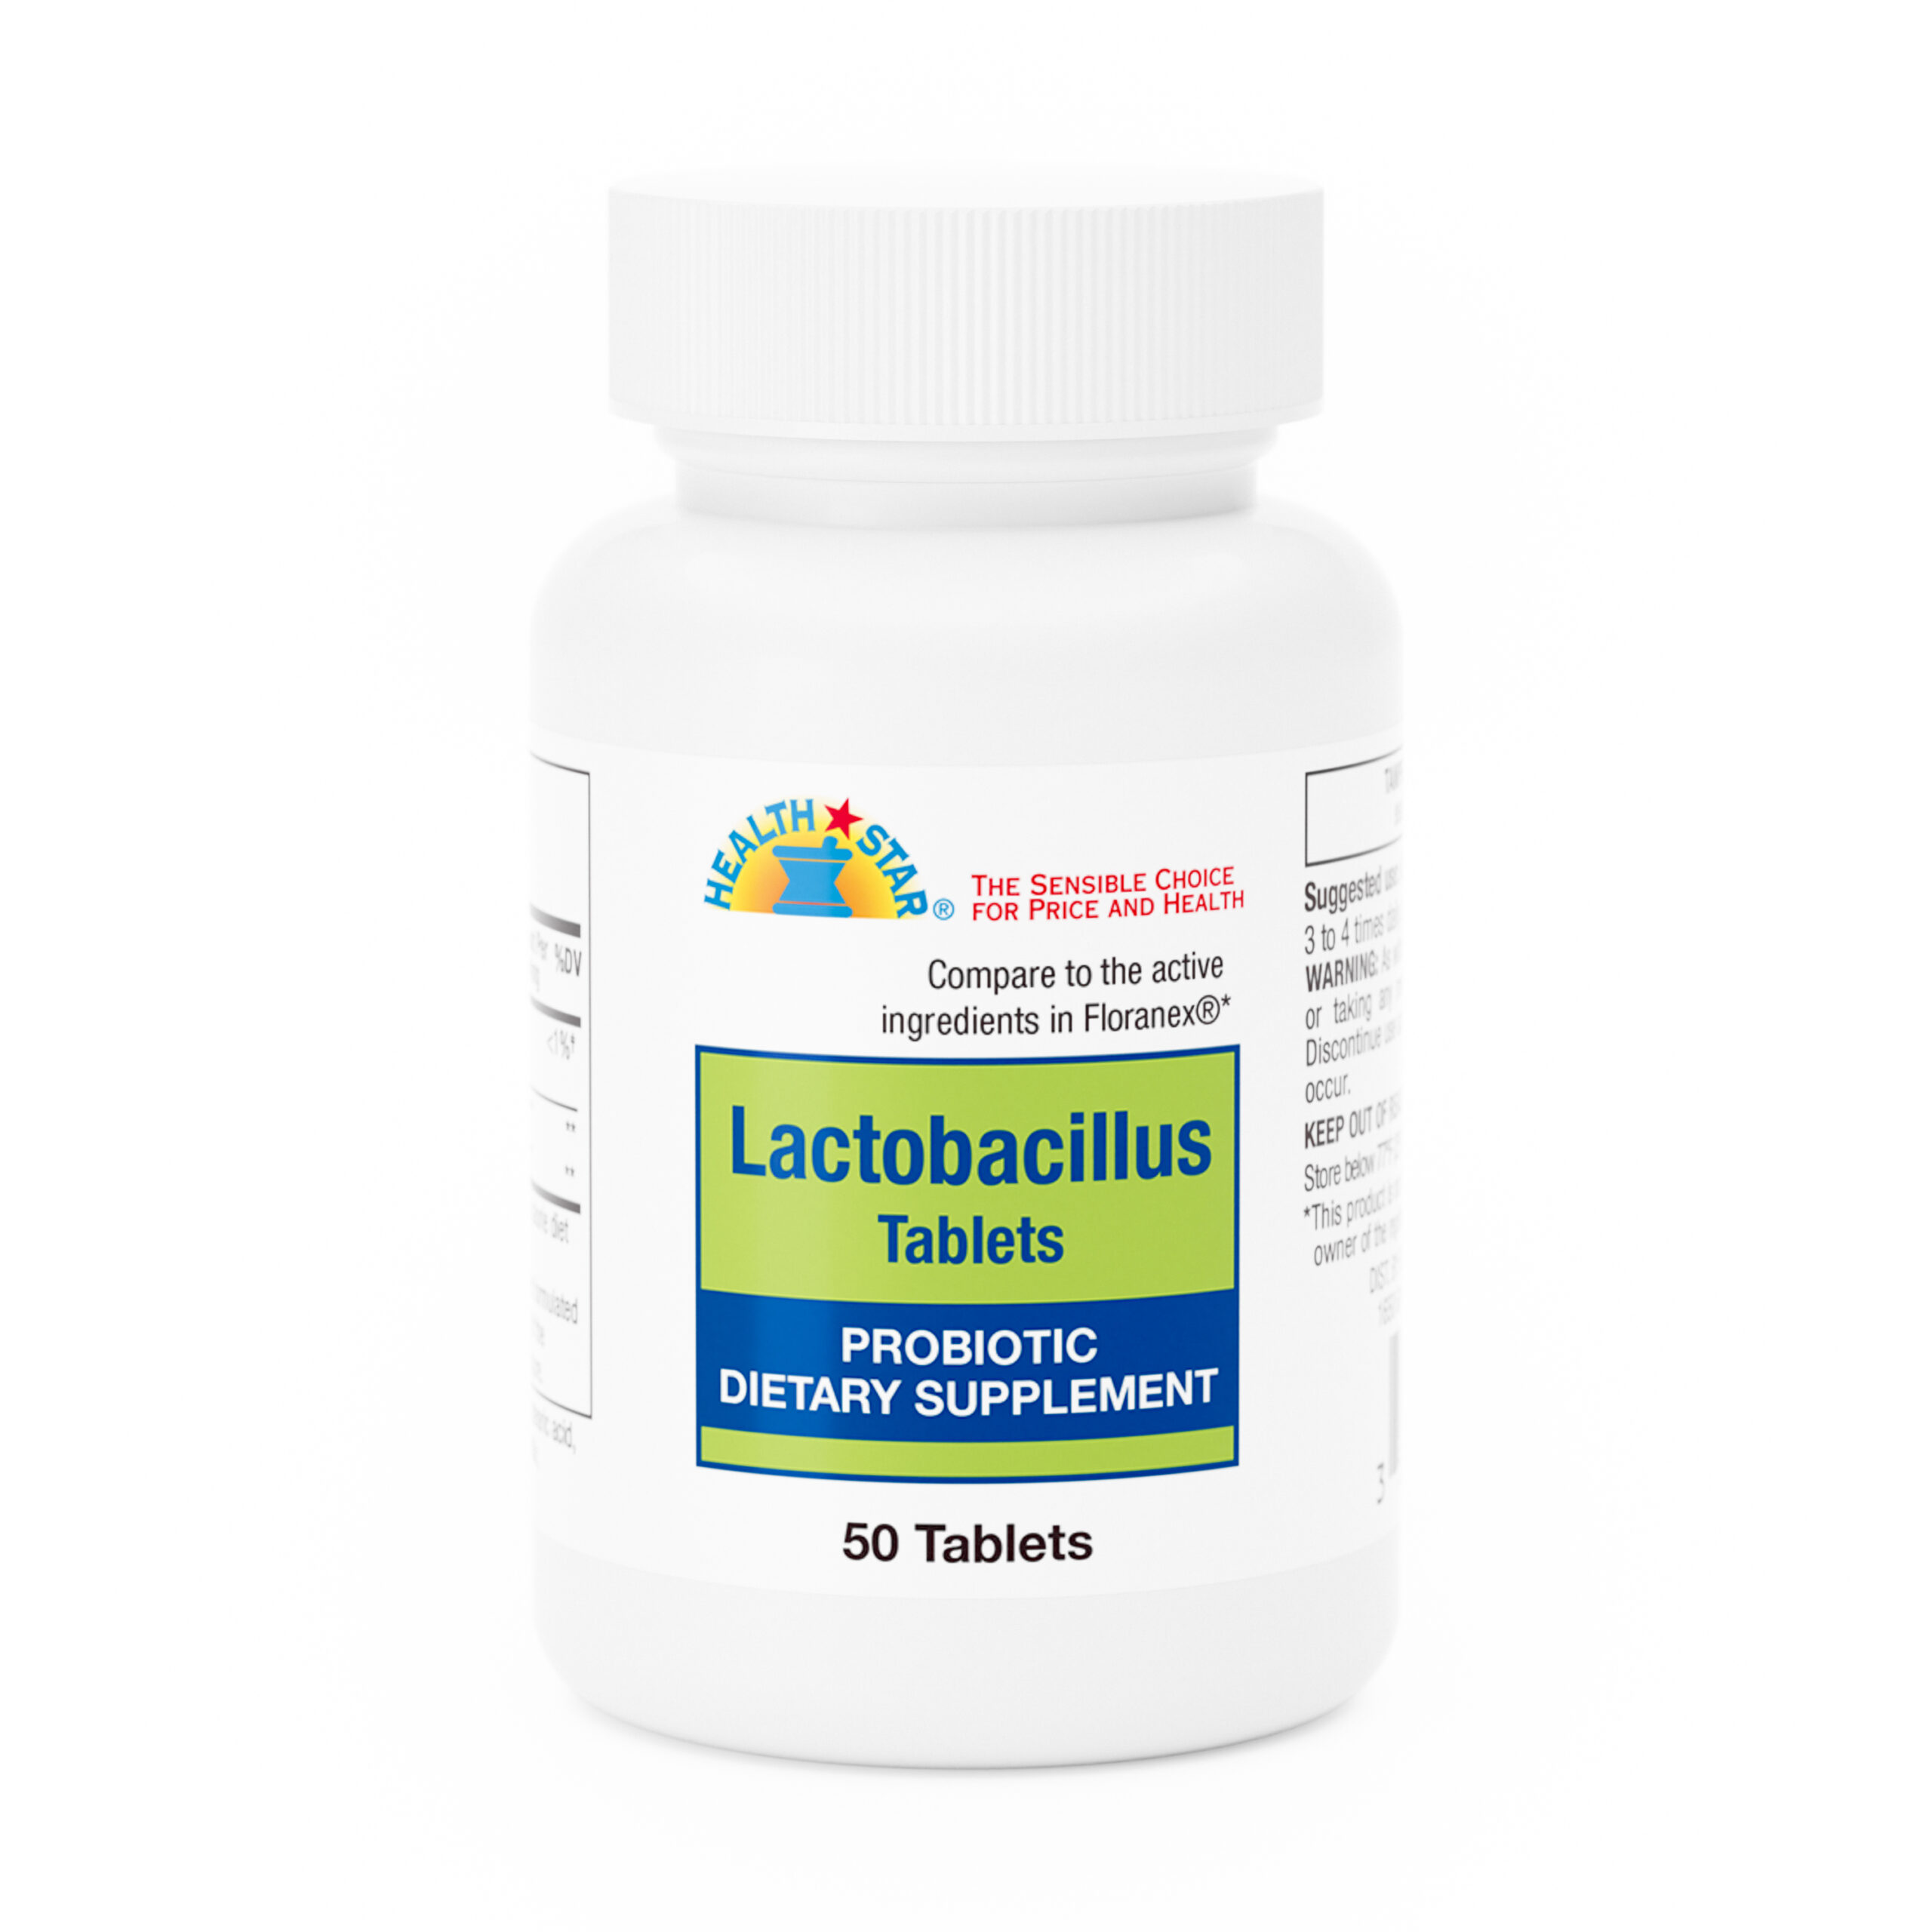 Probiotic Lactobacillus Tablets